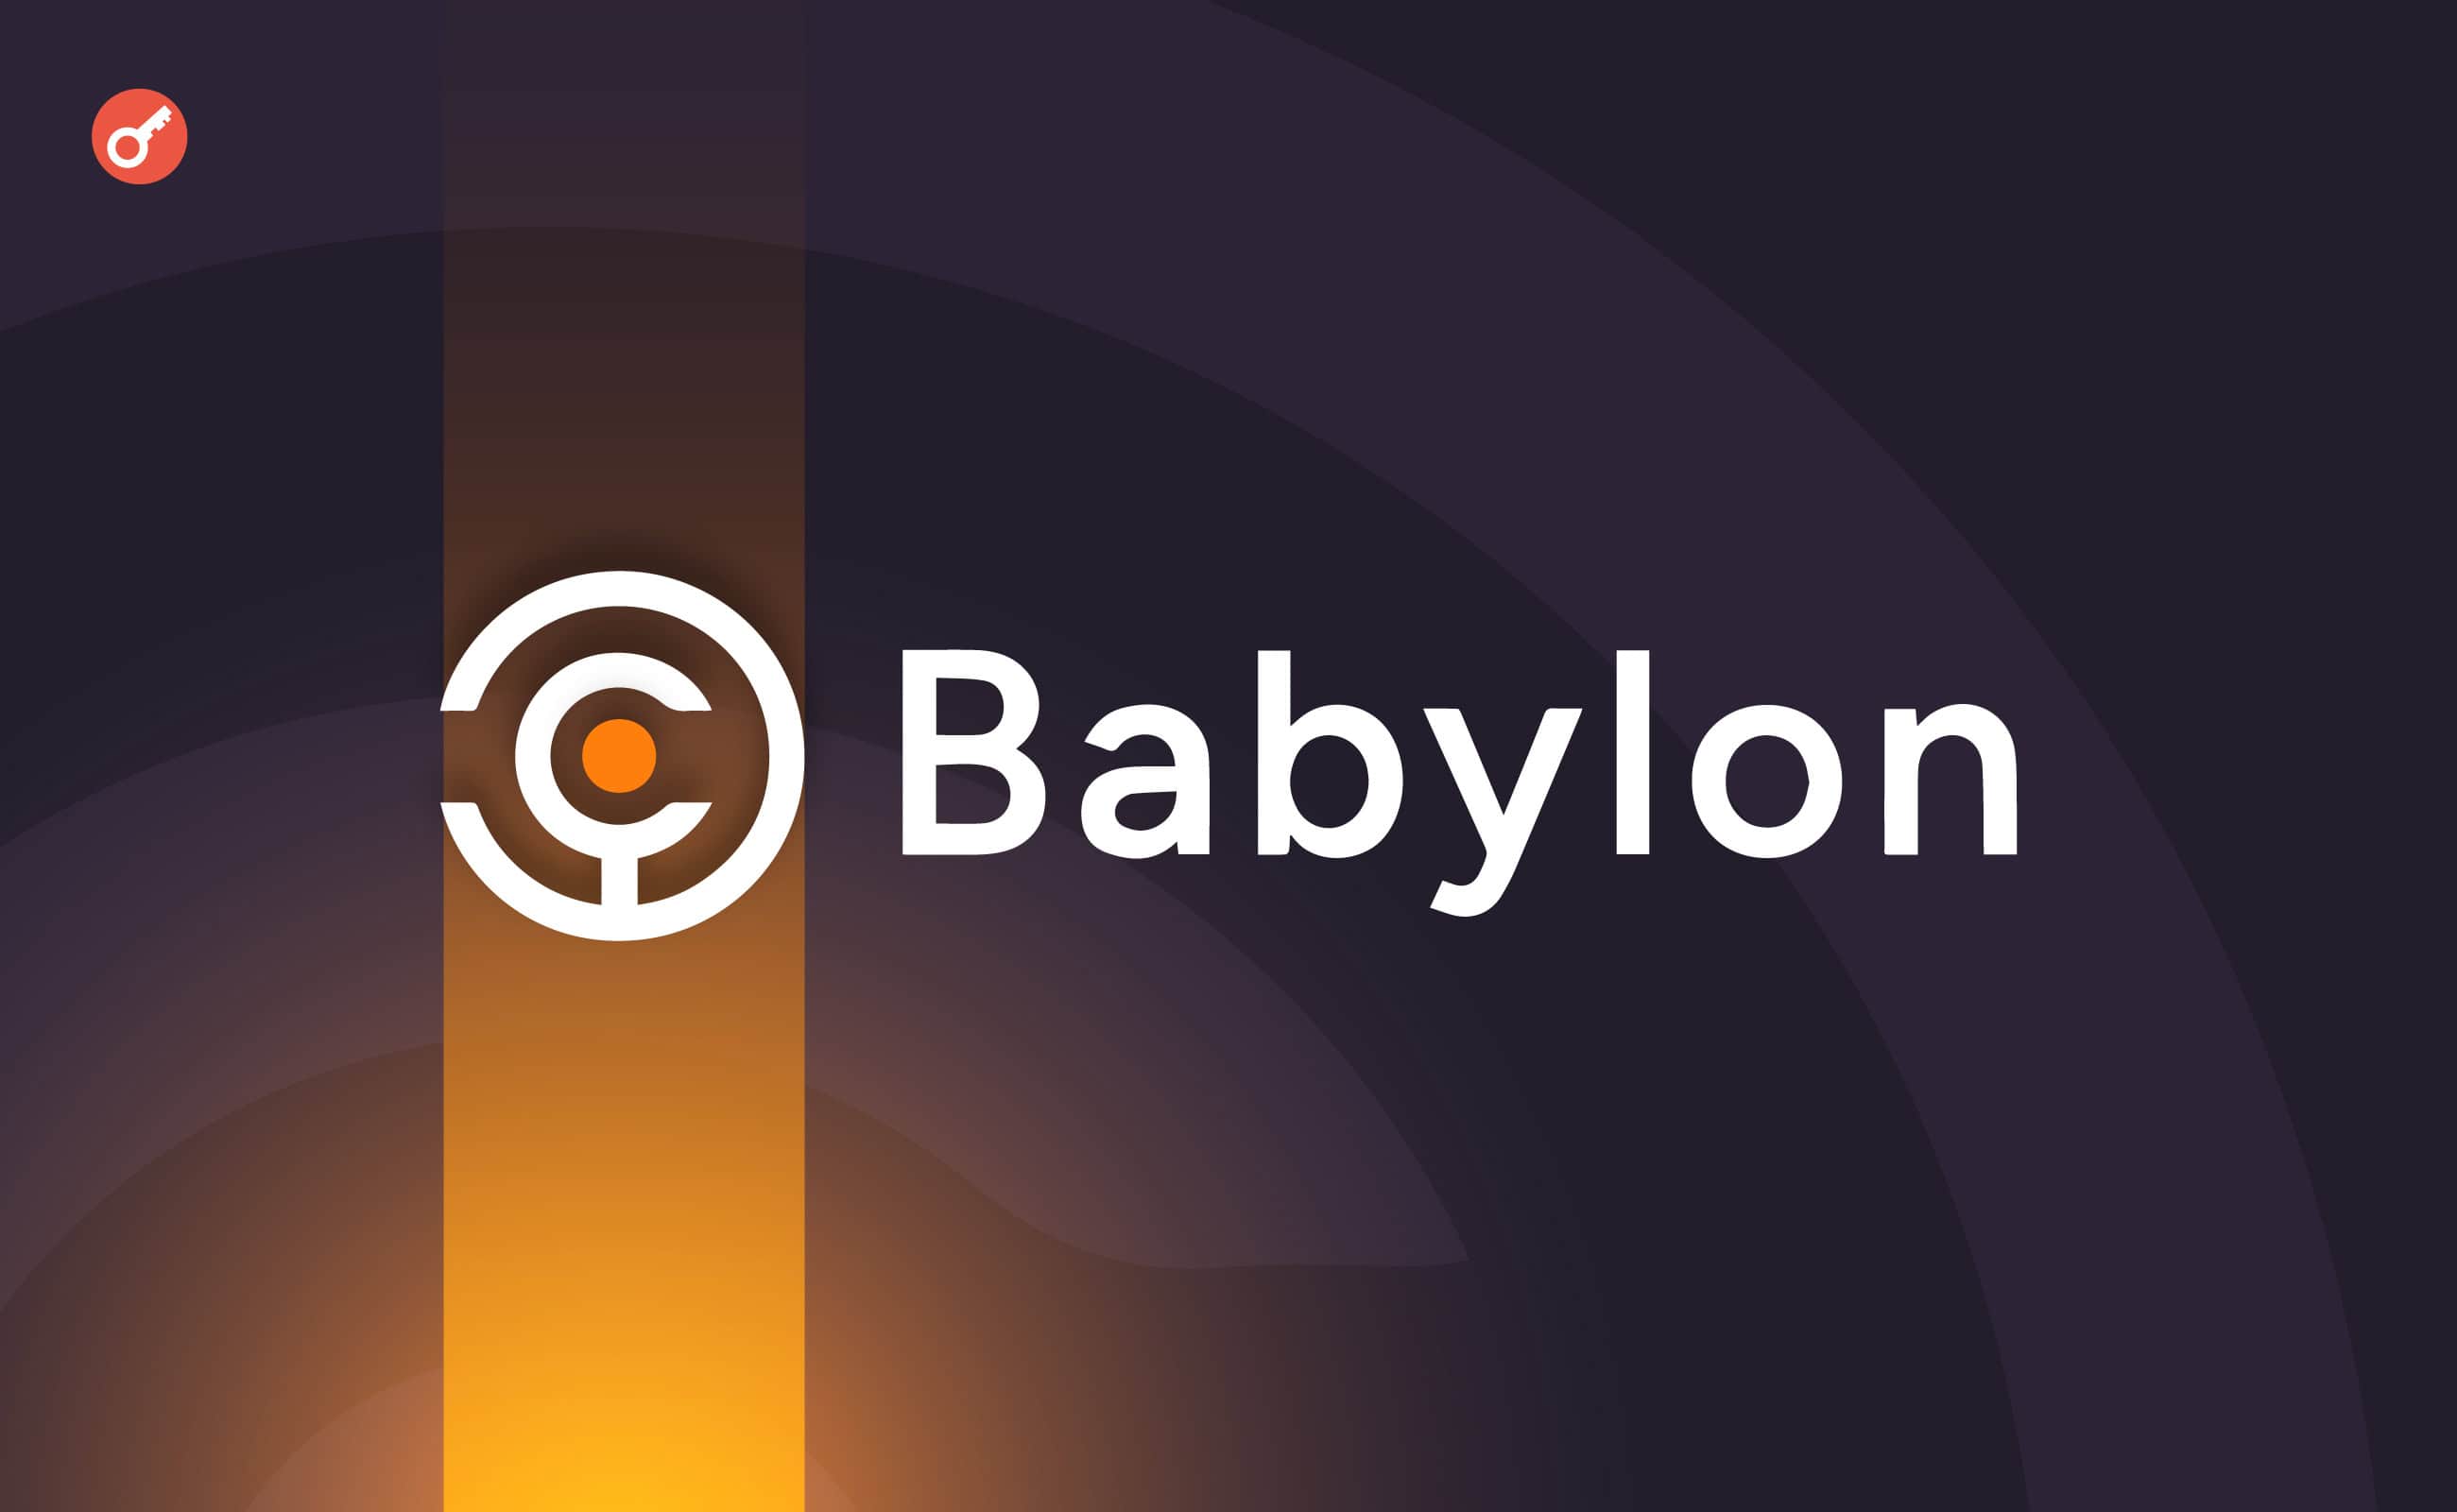 Протокол стейкинга биткоина Babylon привлек $70 млн инвестиций. Заглавный коллаж новости.